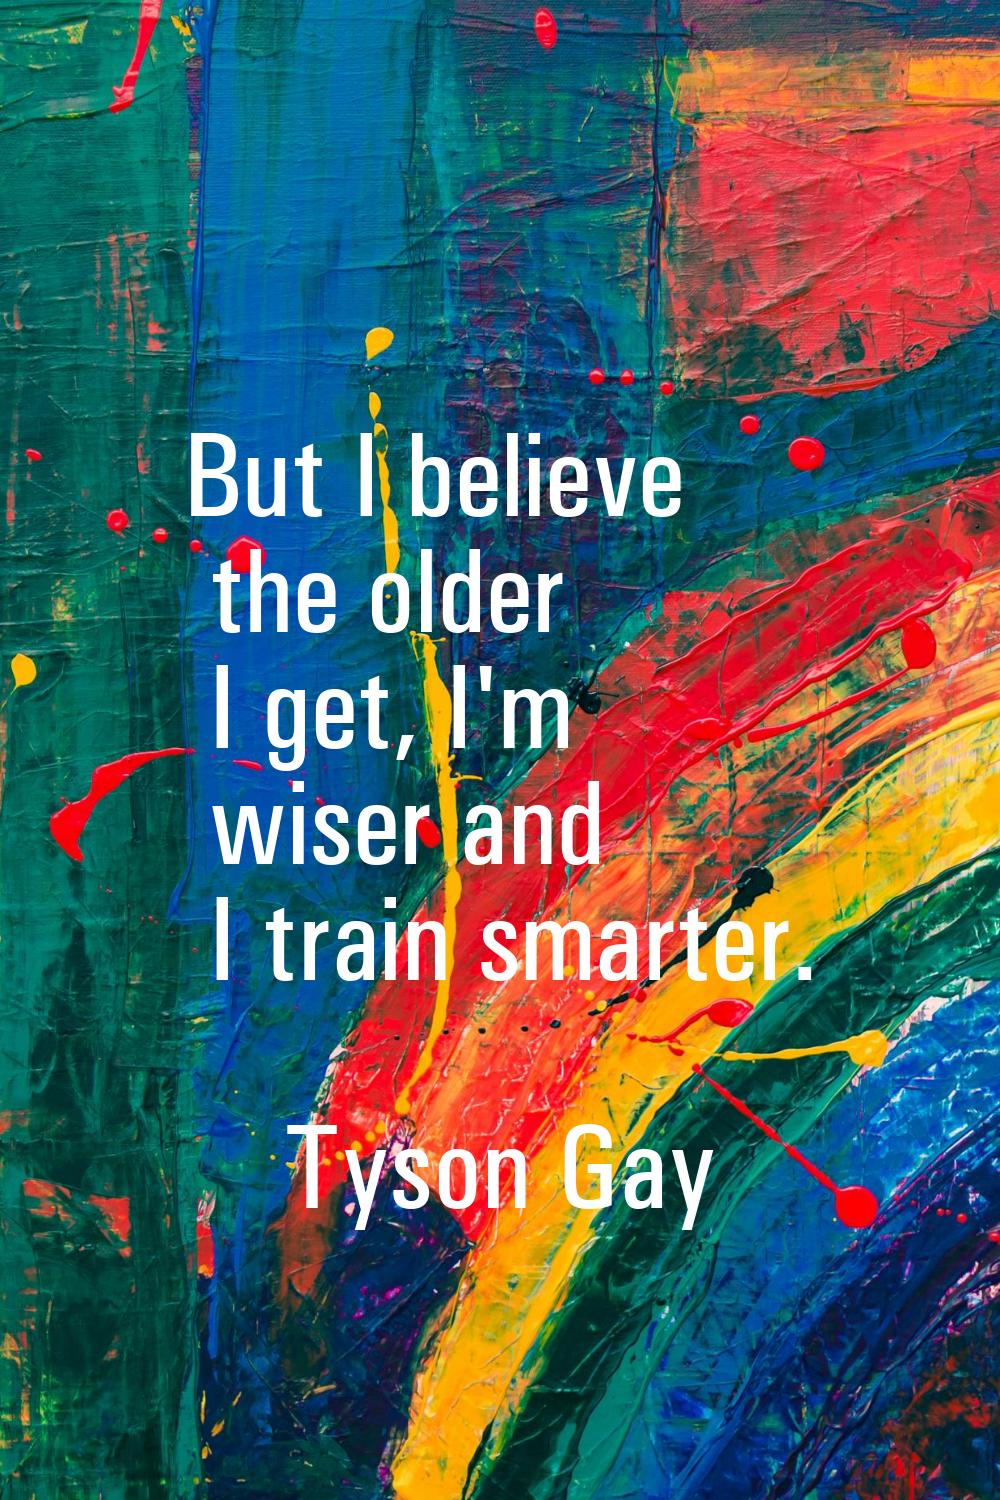 But I believe the older I get, I'm wiser and I train smarter.